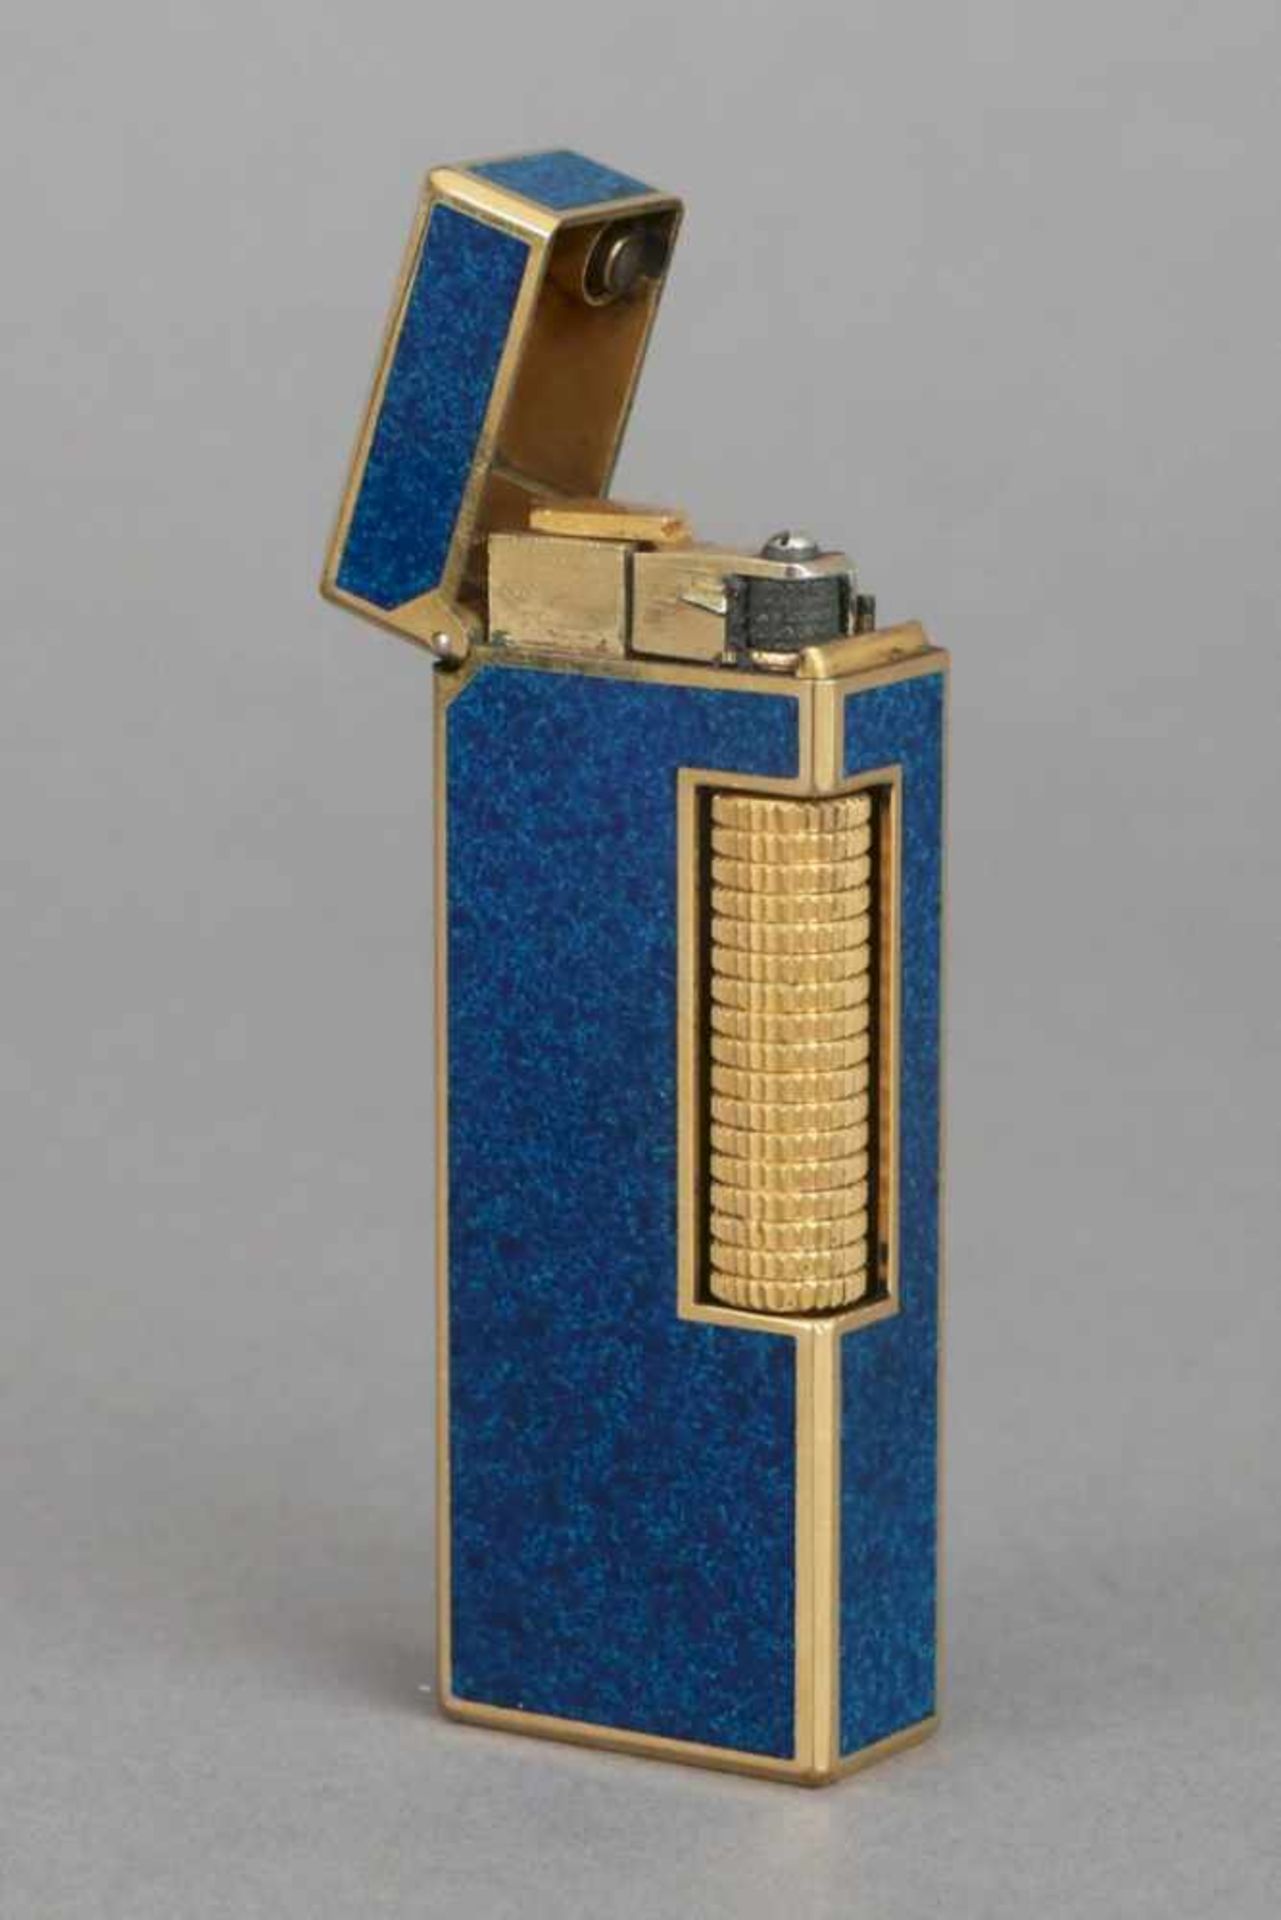 DUNHILL Feuerzeug vergoldet und blau emailliert (Laque de chine¨), hocheckiges Feuerzeug, gestempelt - Bild 2 aus 2